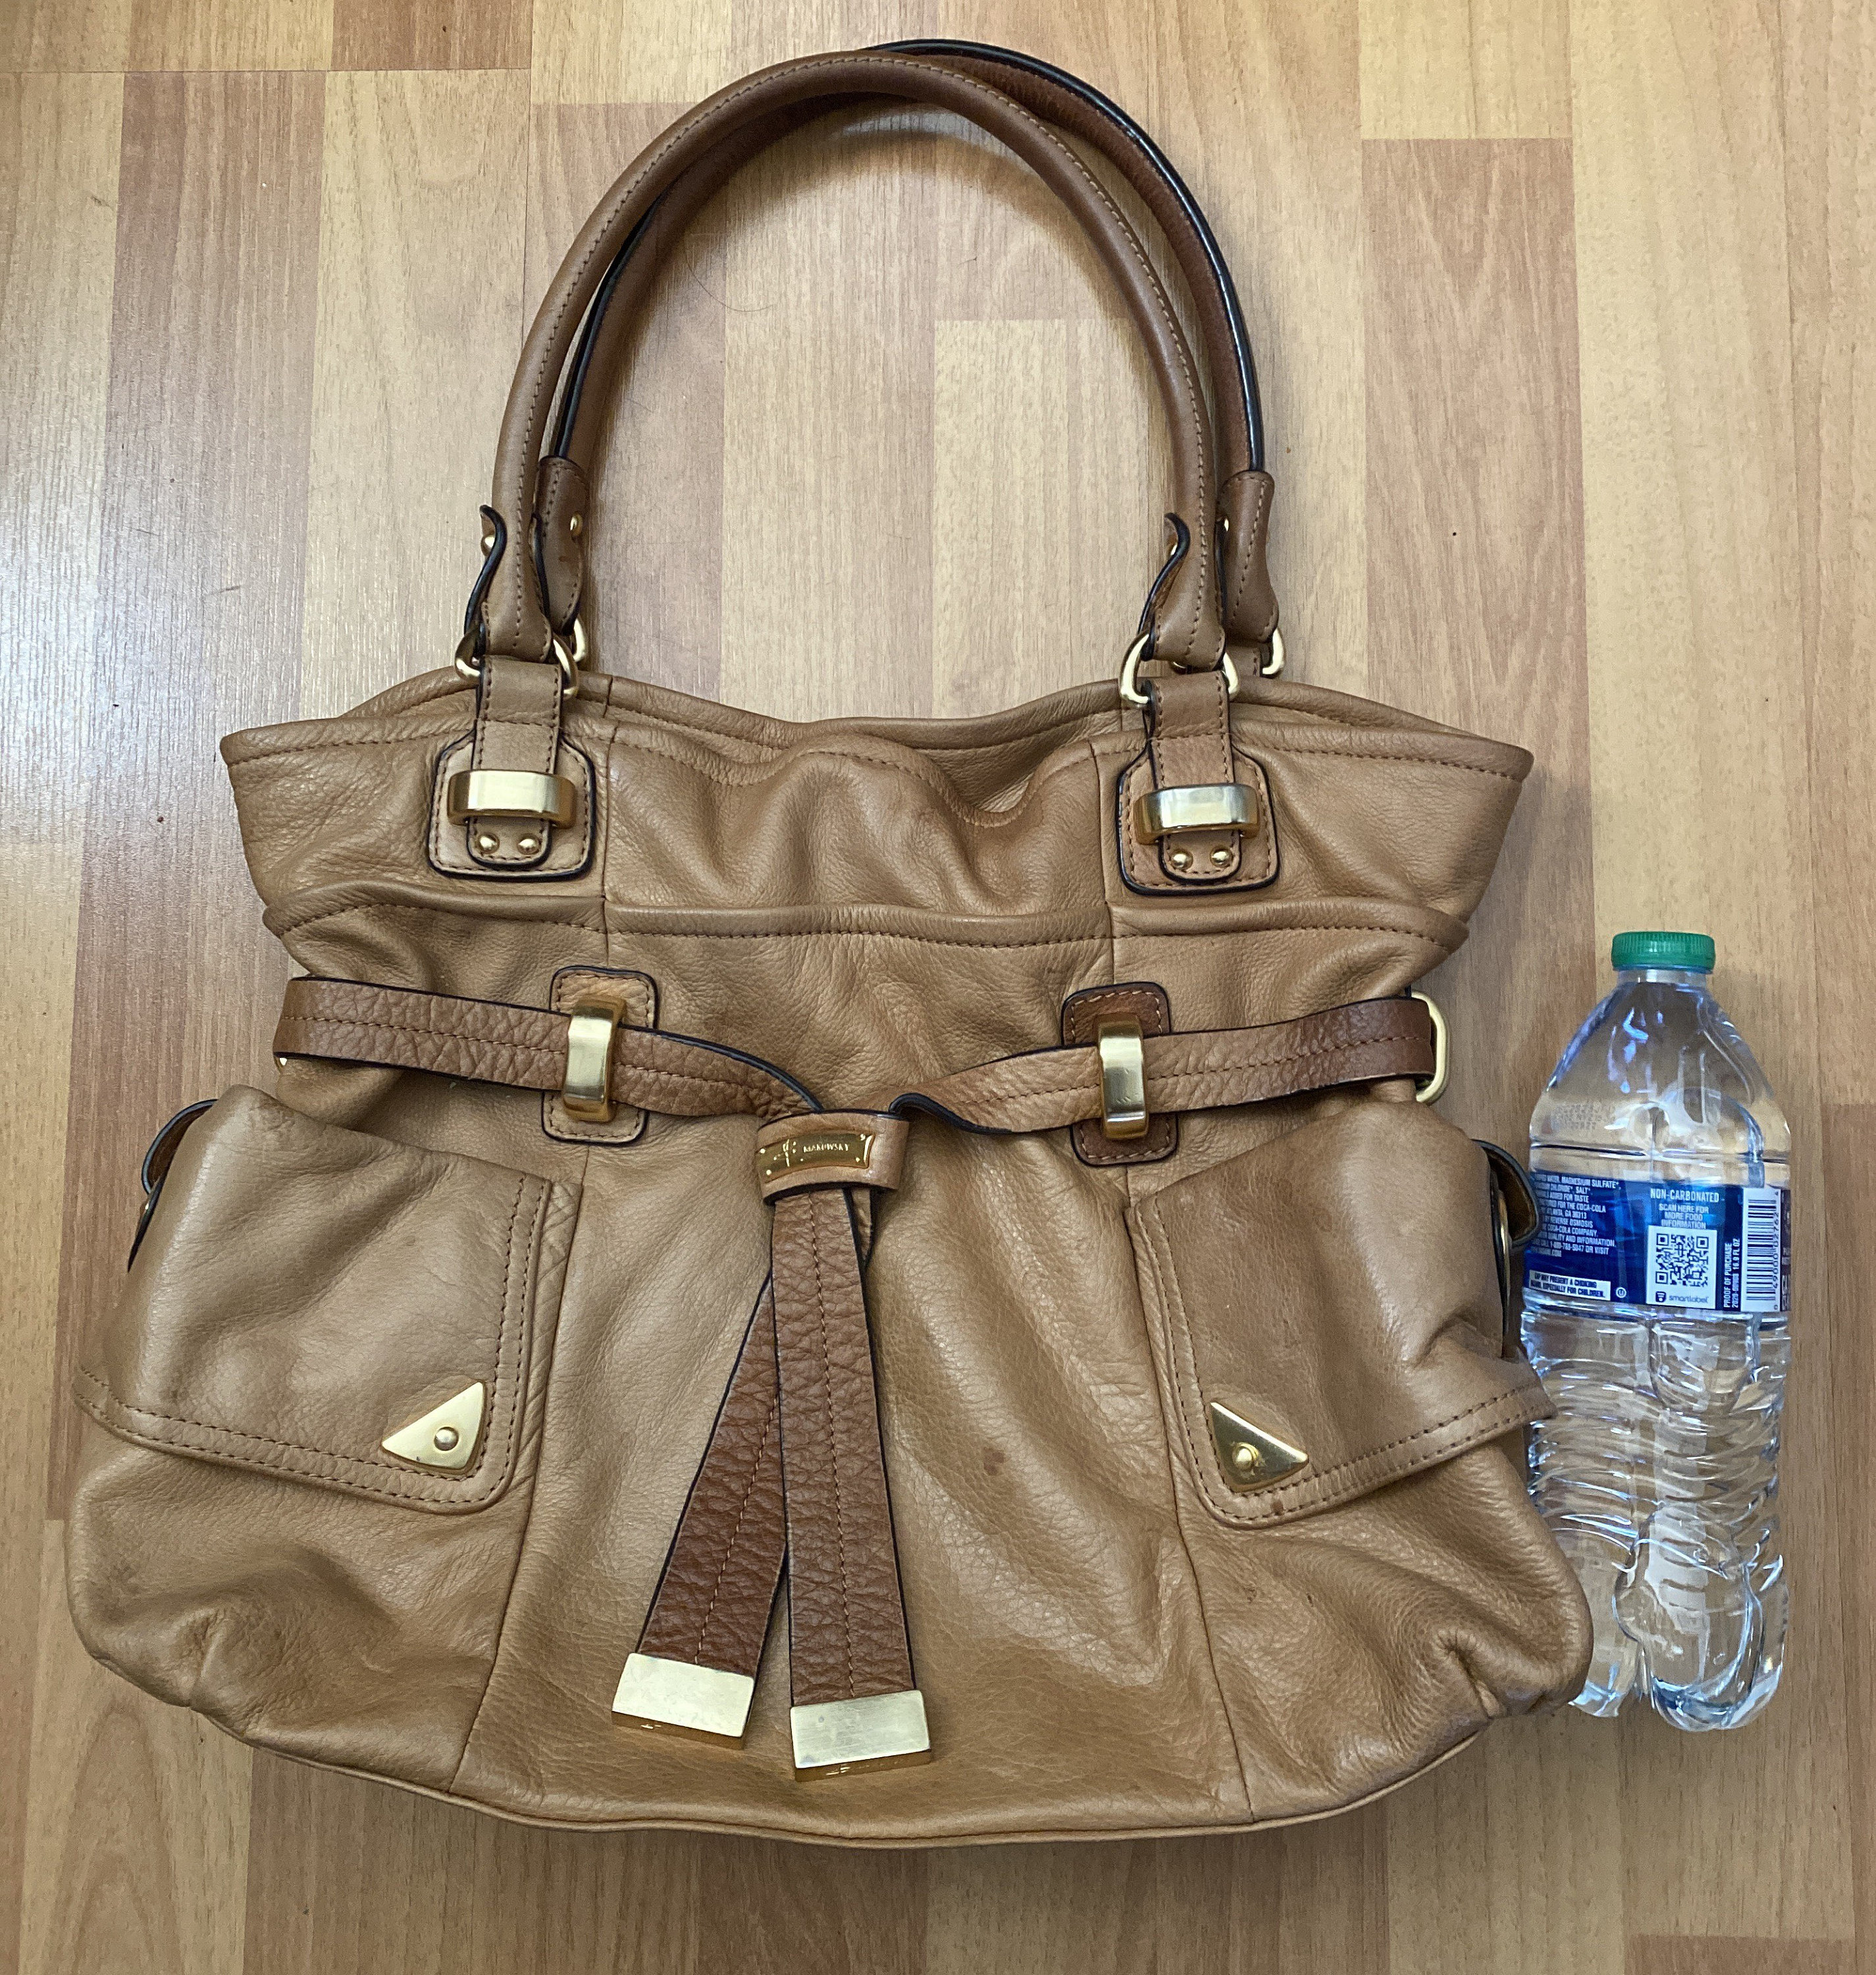 B. Makowsky Blue Striped Leather Handbag